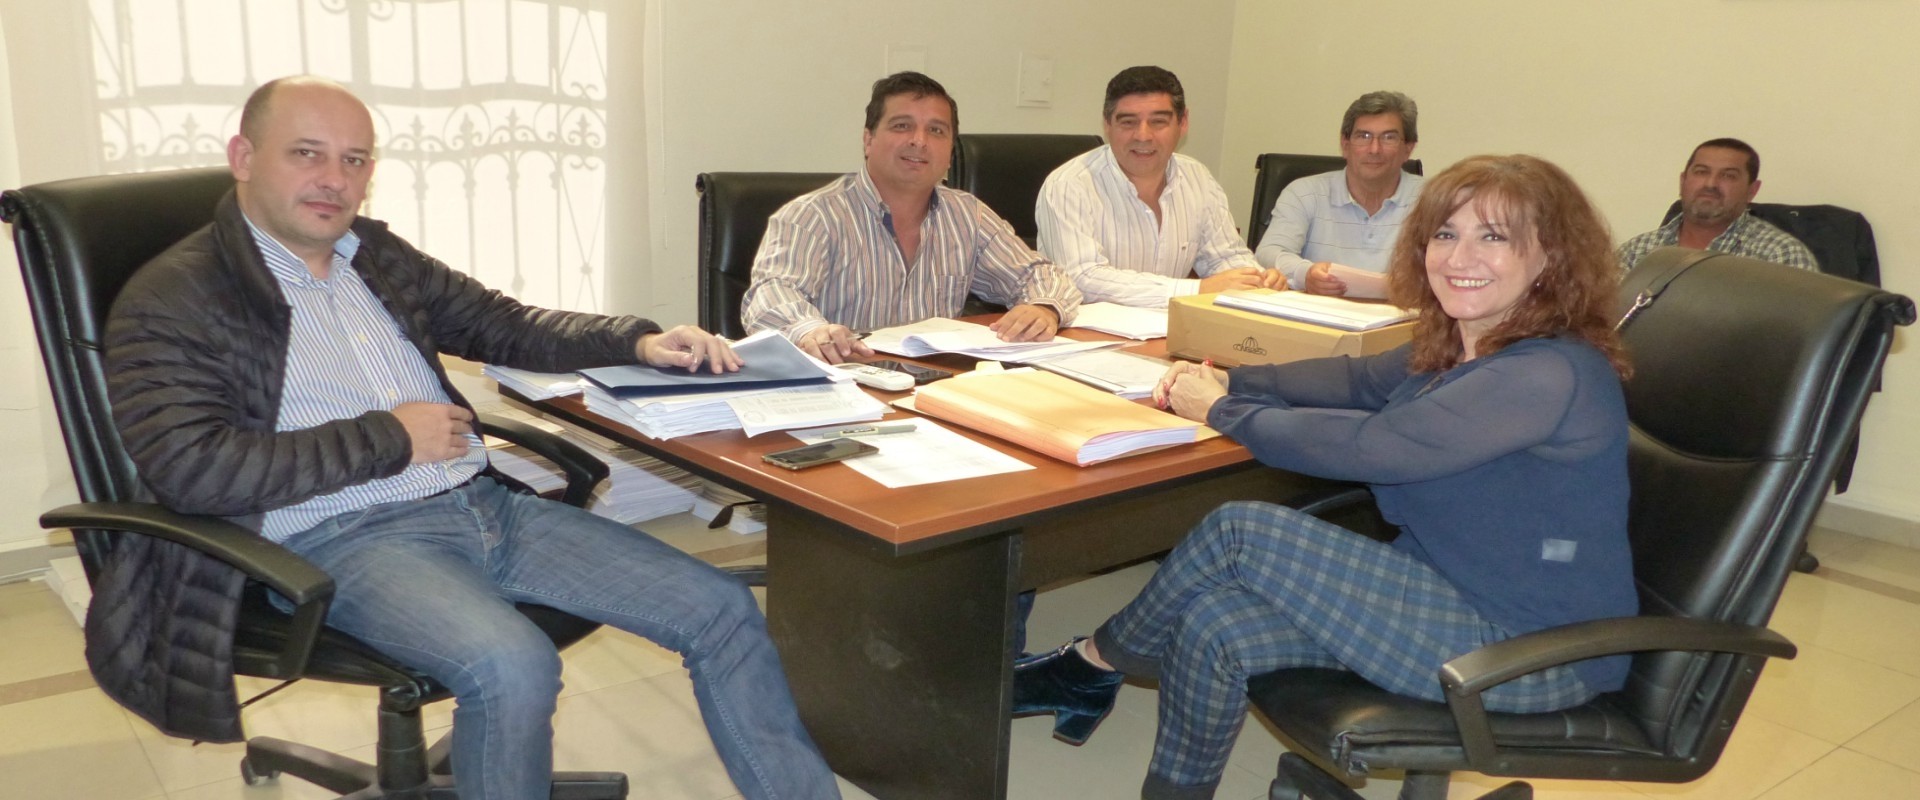 La provincia trabaja en la regularización dominial y la ejecución de nuevas viviendas en el departamento Gualeguay